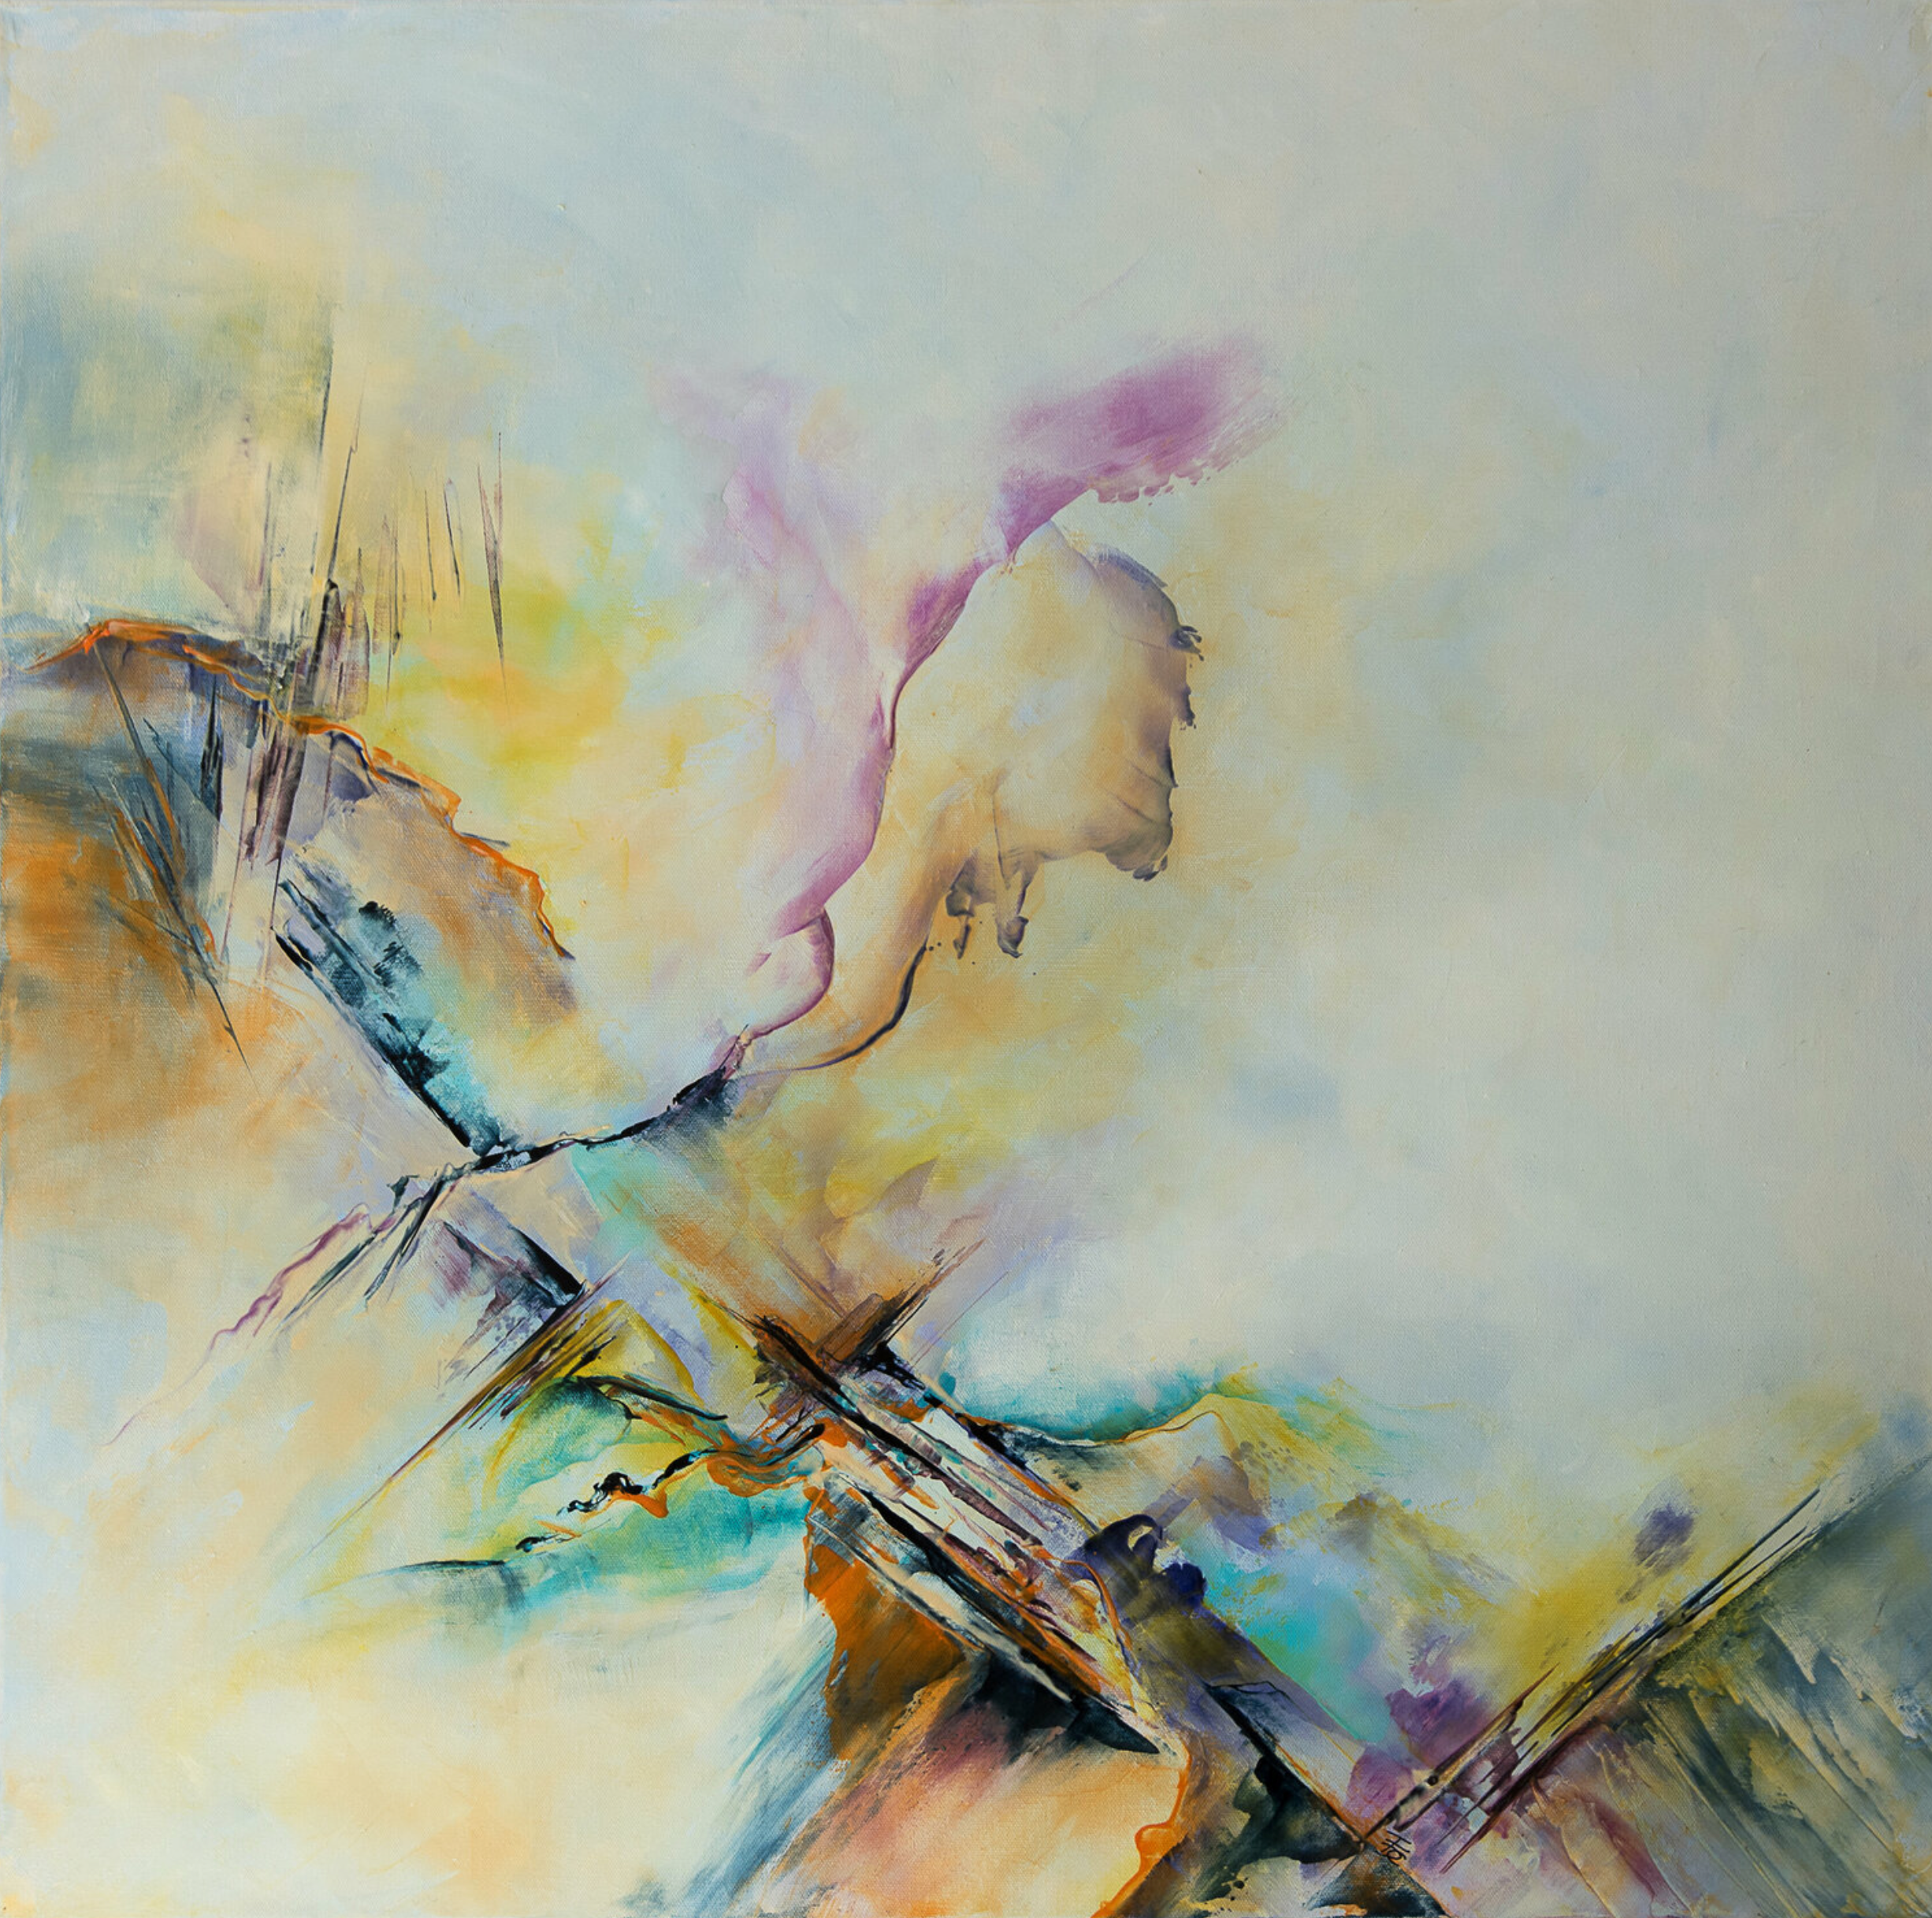 El cuadro abstracto "Sirius" de Françoise Dugourd-Caput muestra un remolino de colores que recuerdan a la naturaleza y al flujo del tiempo, a veces rápidamente visibles por los bordes afilados y otros momentos, relajados y serenos en colores suaves, agradables y melosos.